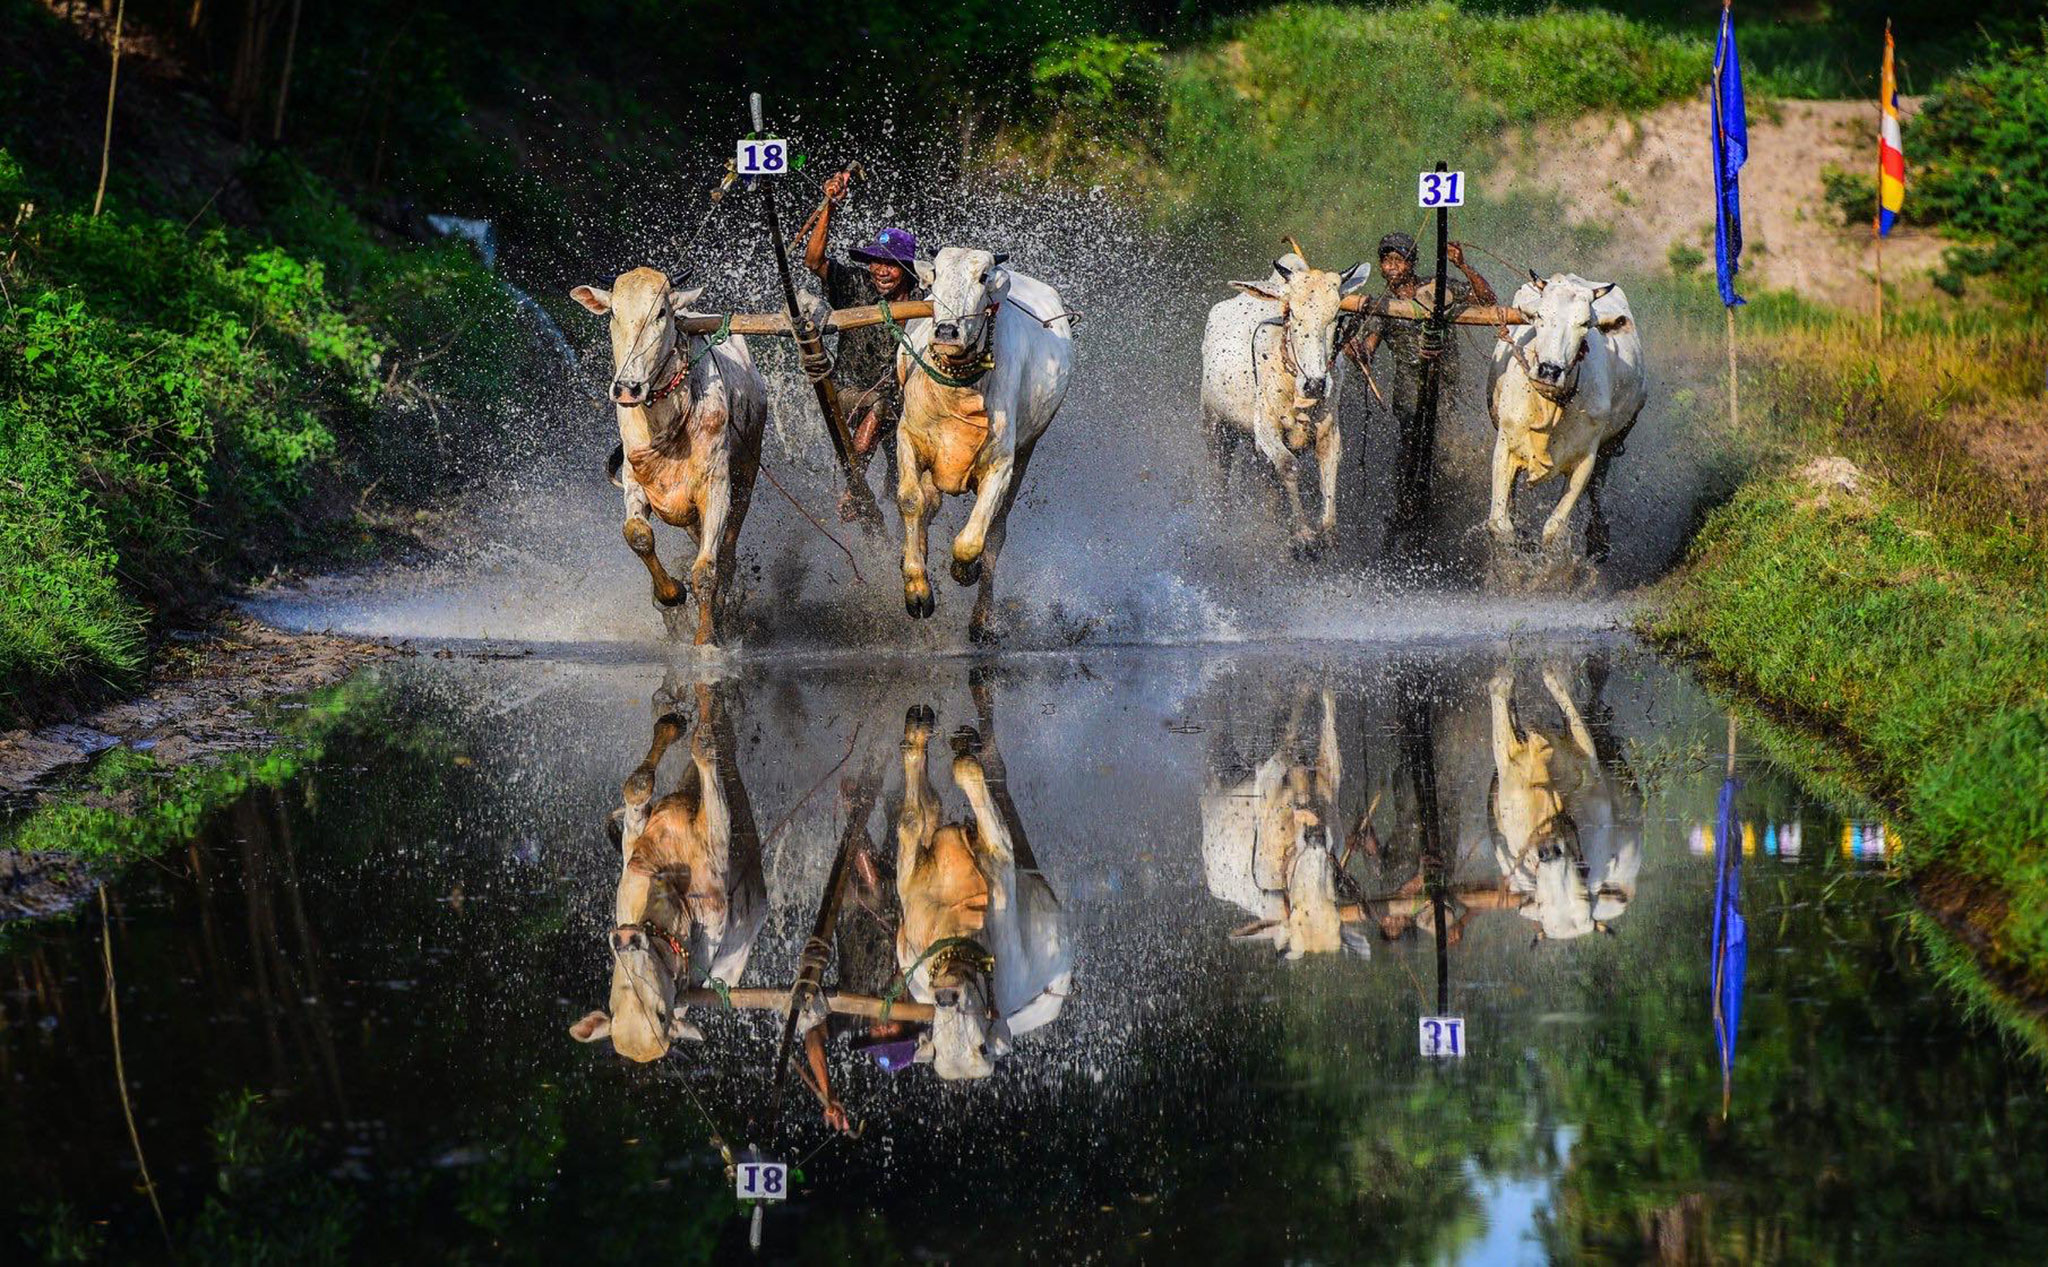 Mời anh em tham dự lễ hội đua bò Chùa Rô 2019: Anh Huỳnh Phúc Hậu chia sẻ & hướng dẫn chụp - 20/9